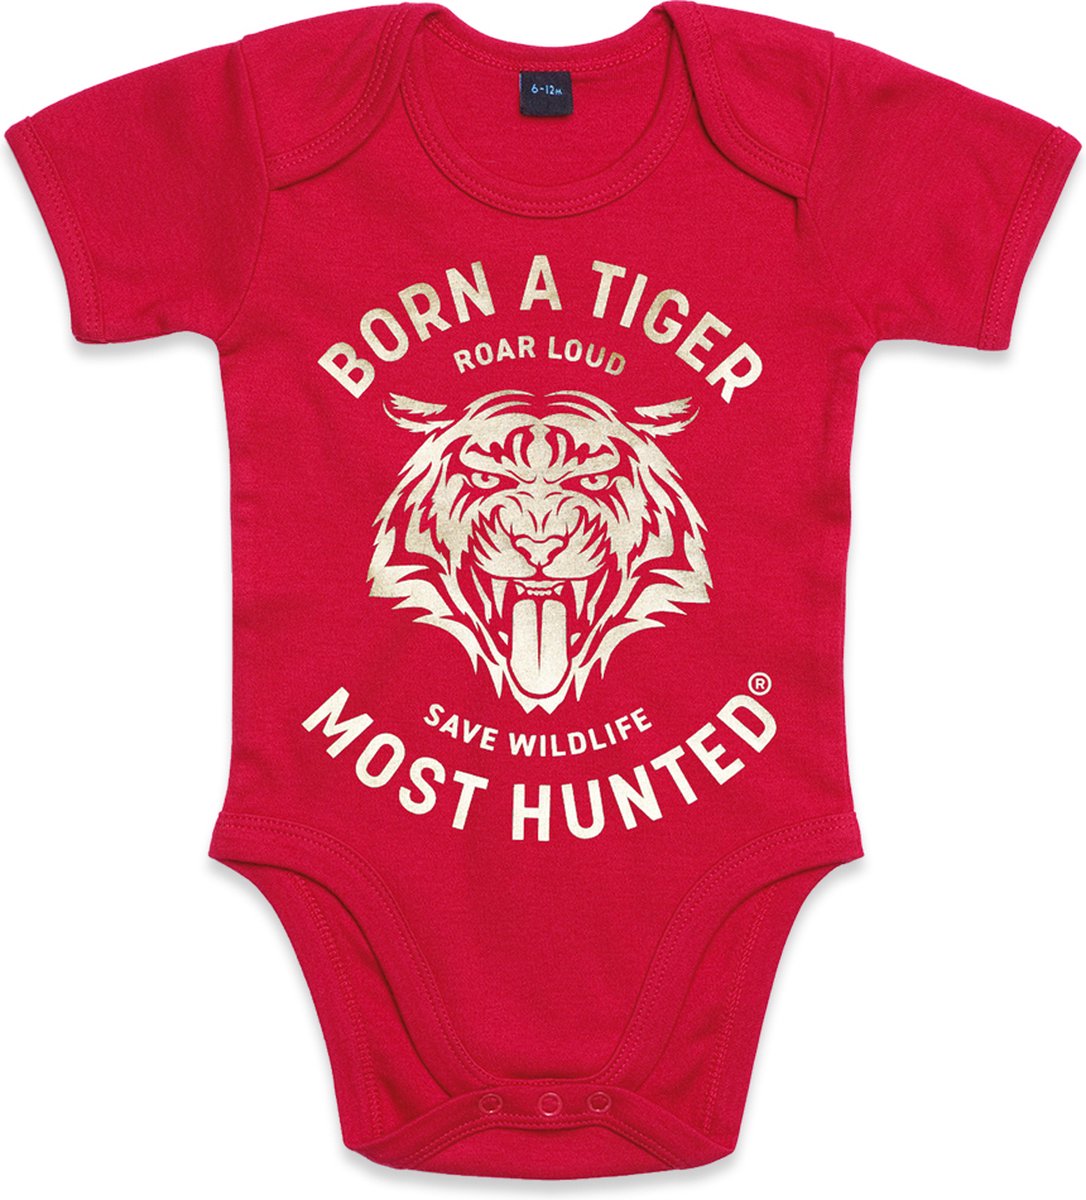 Most Hunted - baby romper - tijger - rood - goud - maat 0-3 maanden |  bol.com